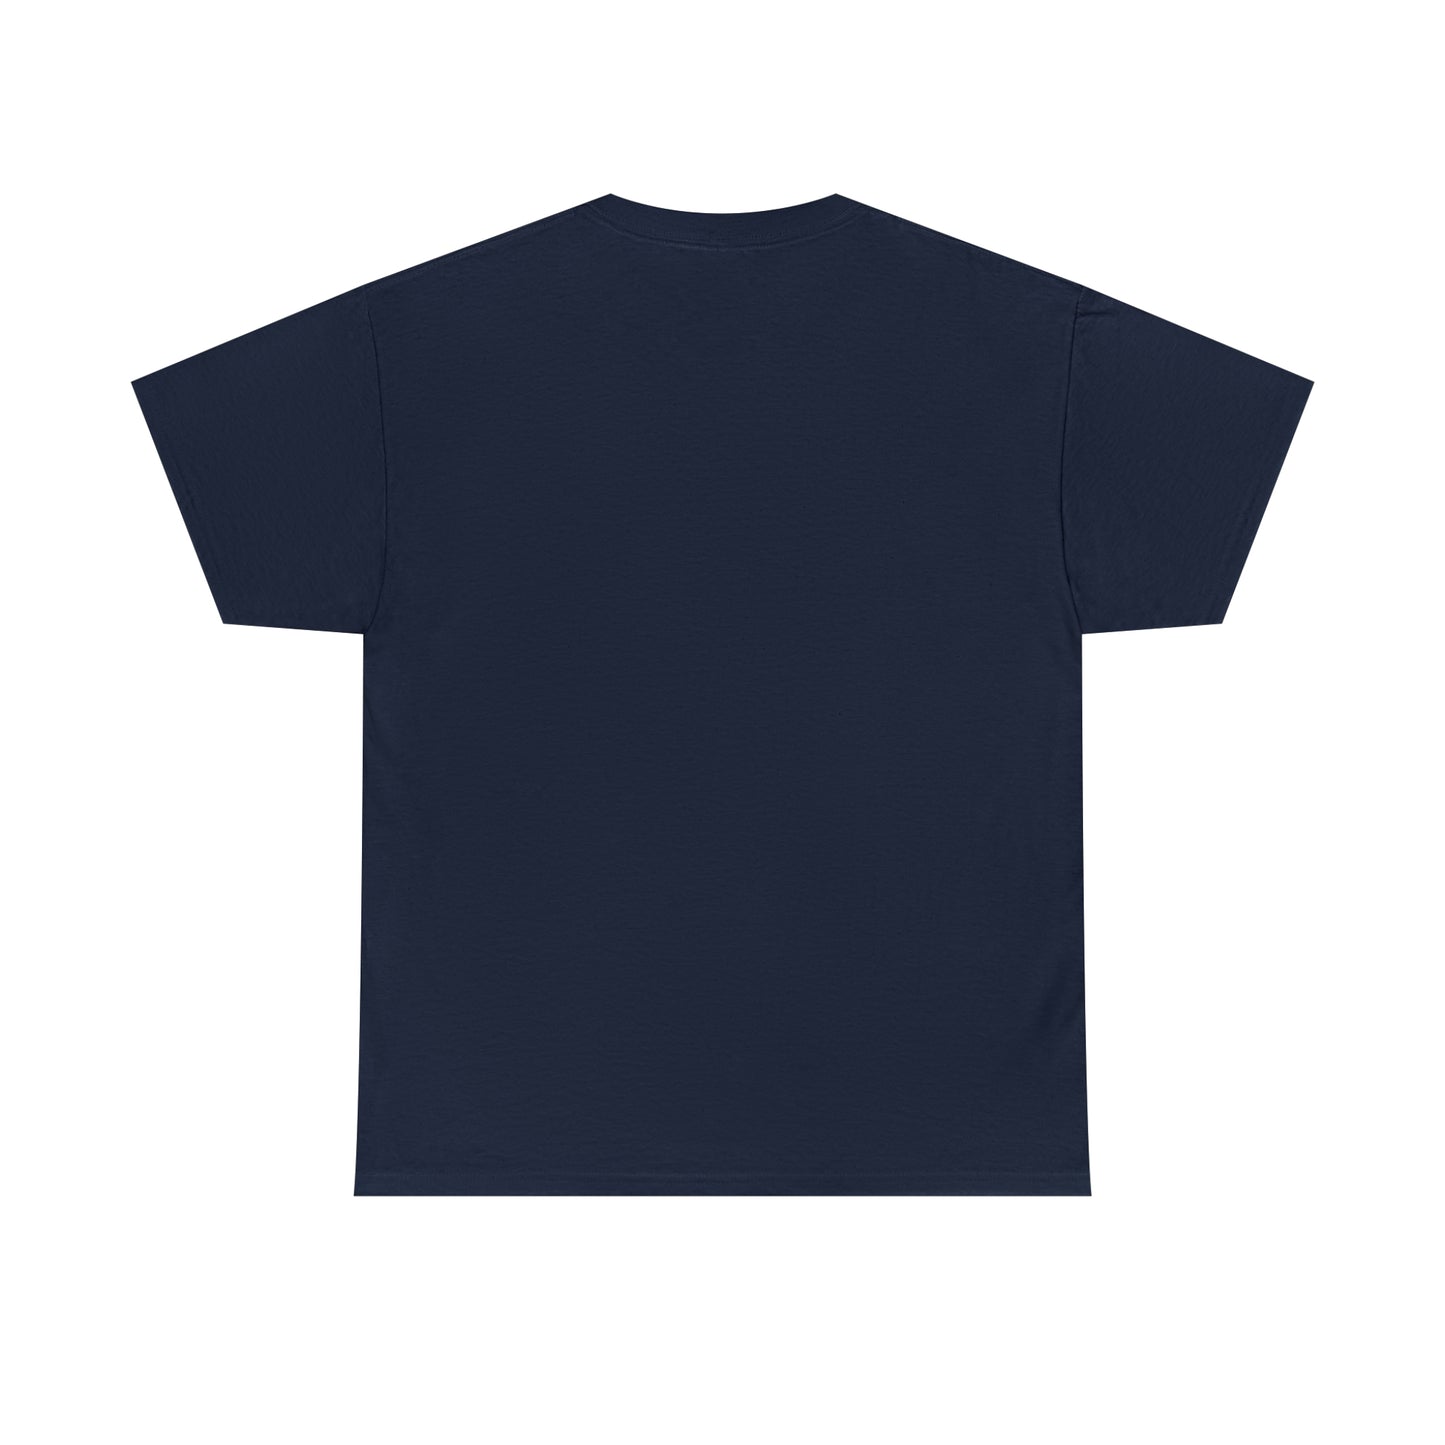 Centennial - Men's Heavy Cotton T-Shirt - Class Of 2016